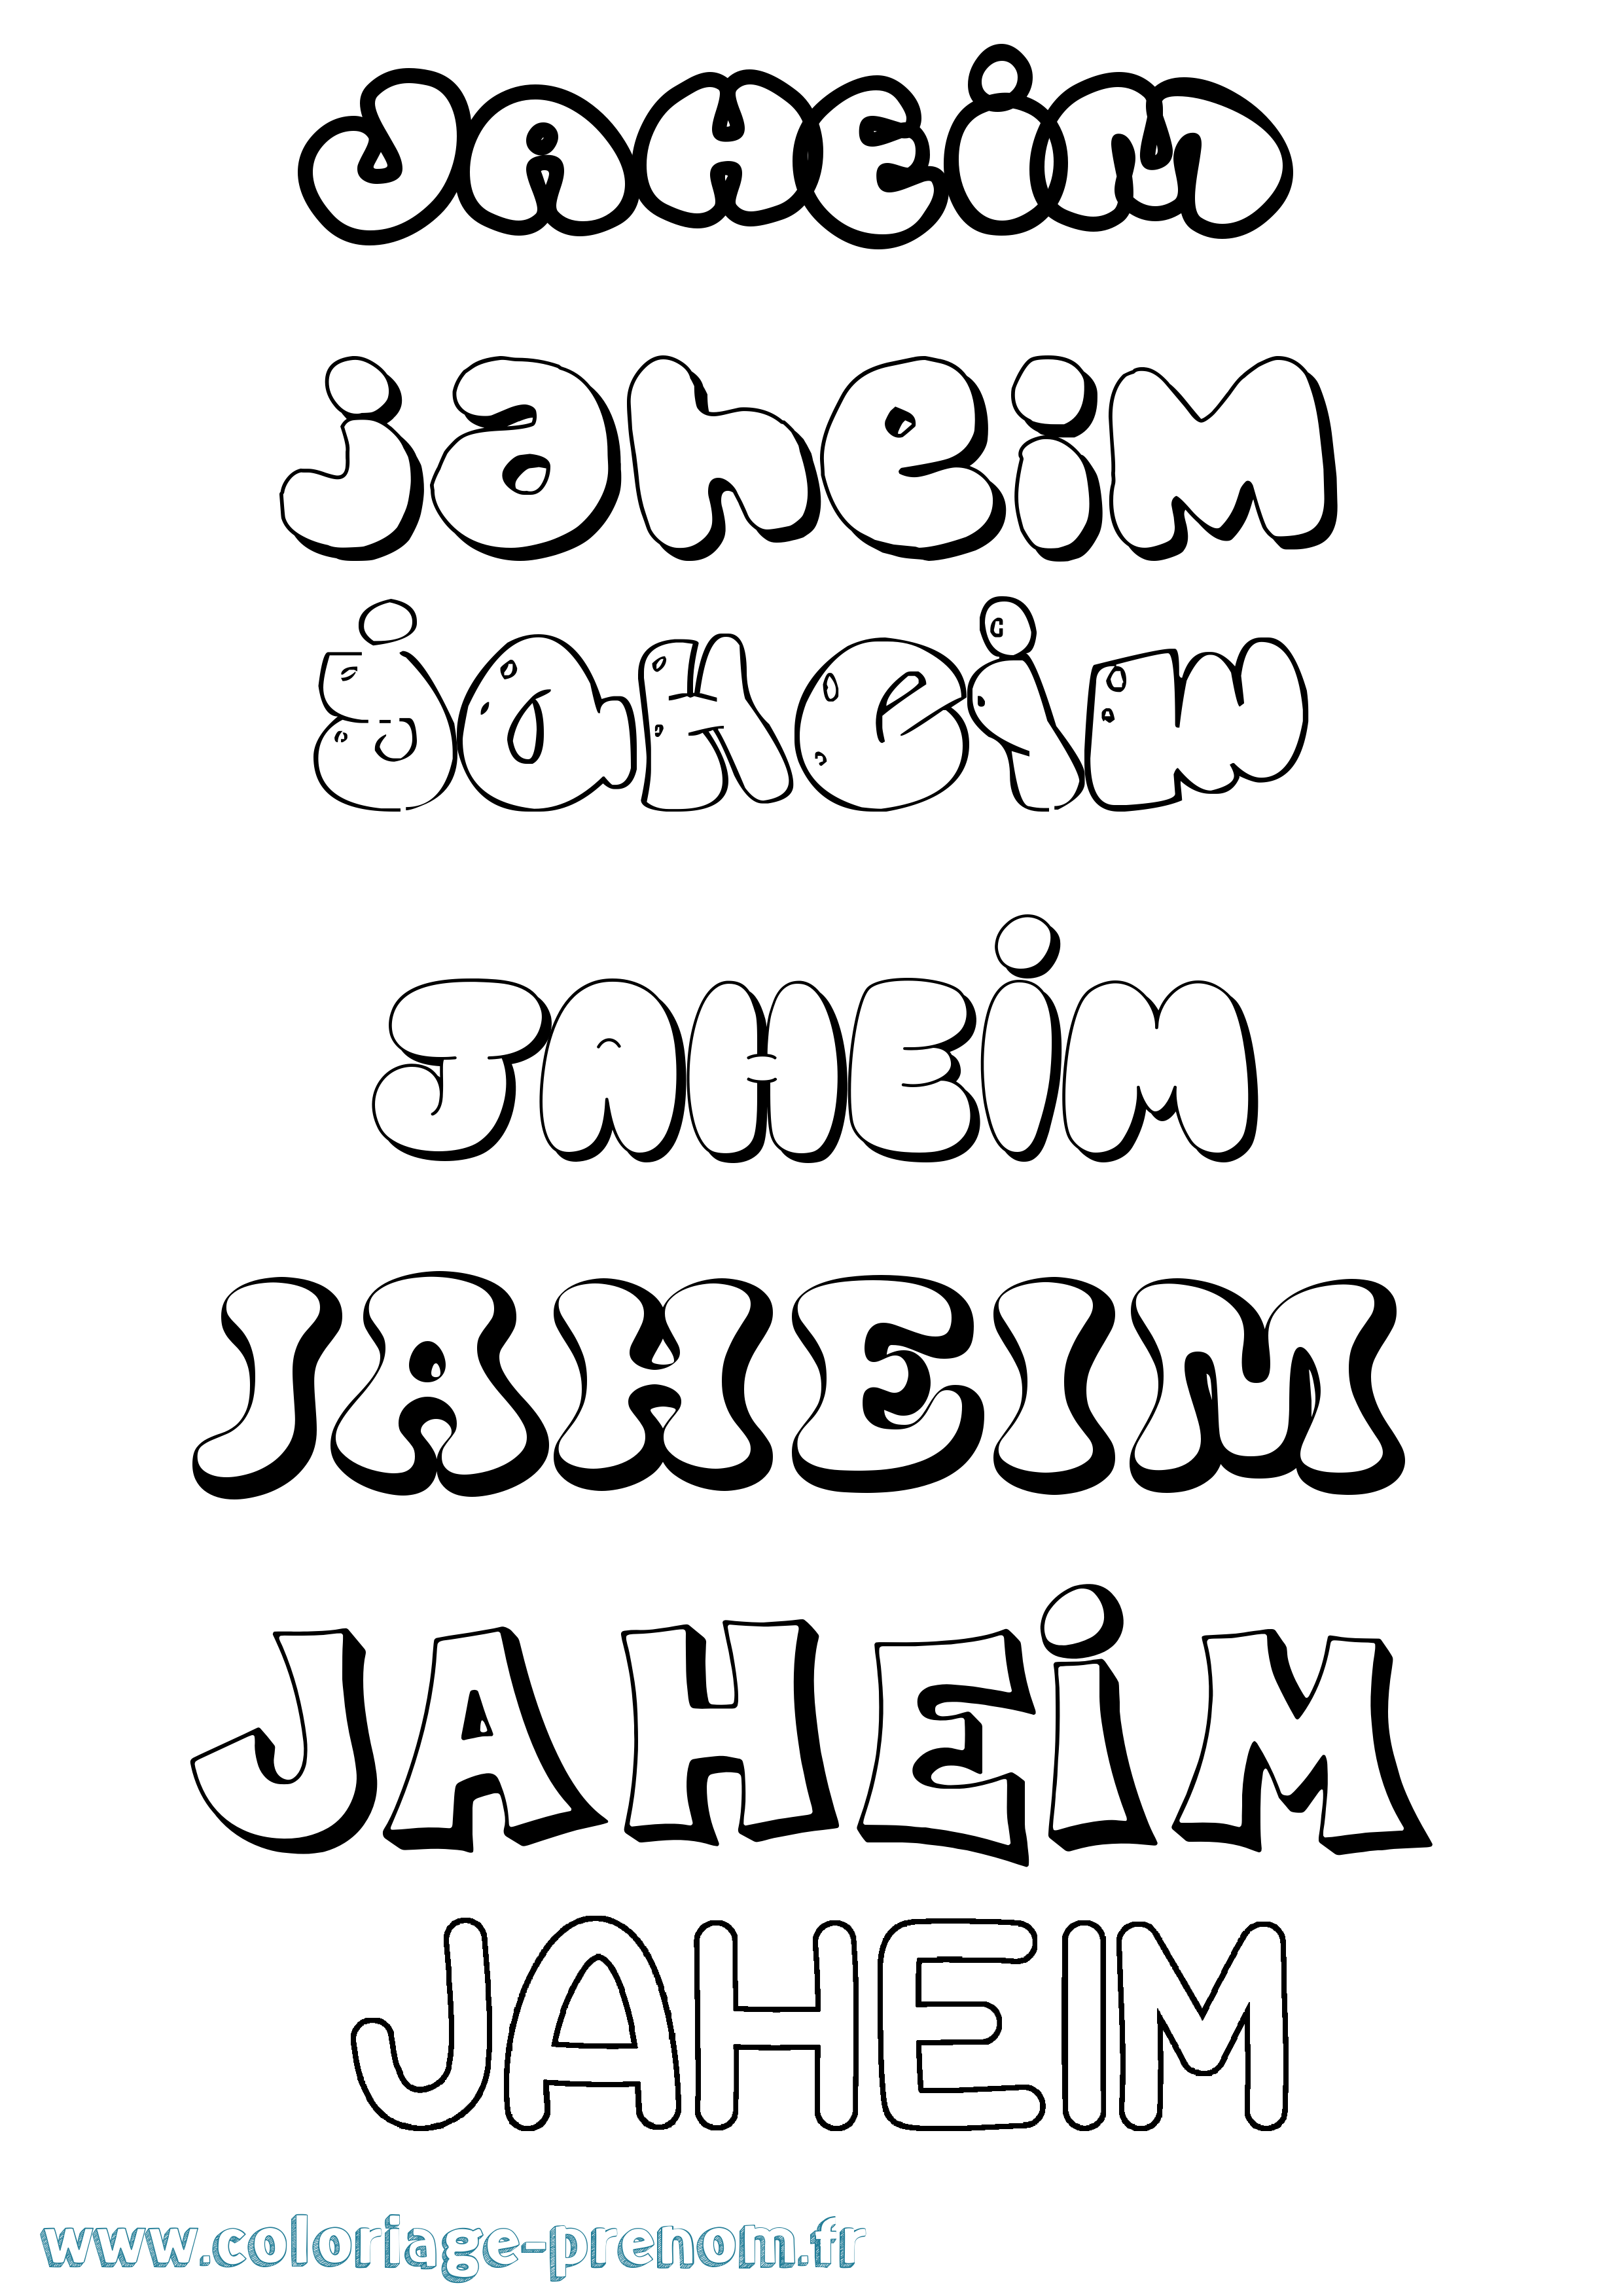 Coloriage prénom Jaheim Bubble